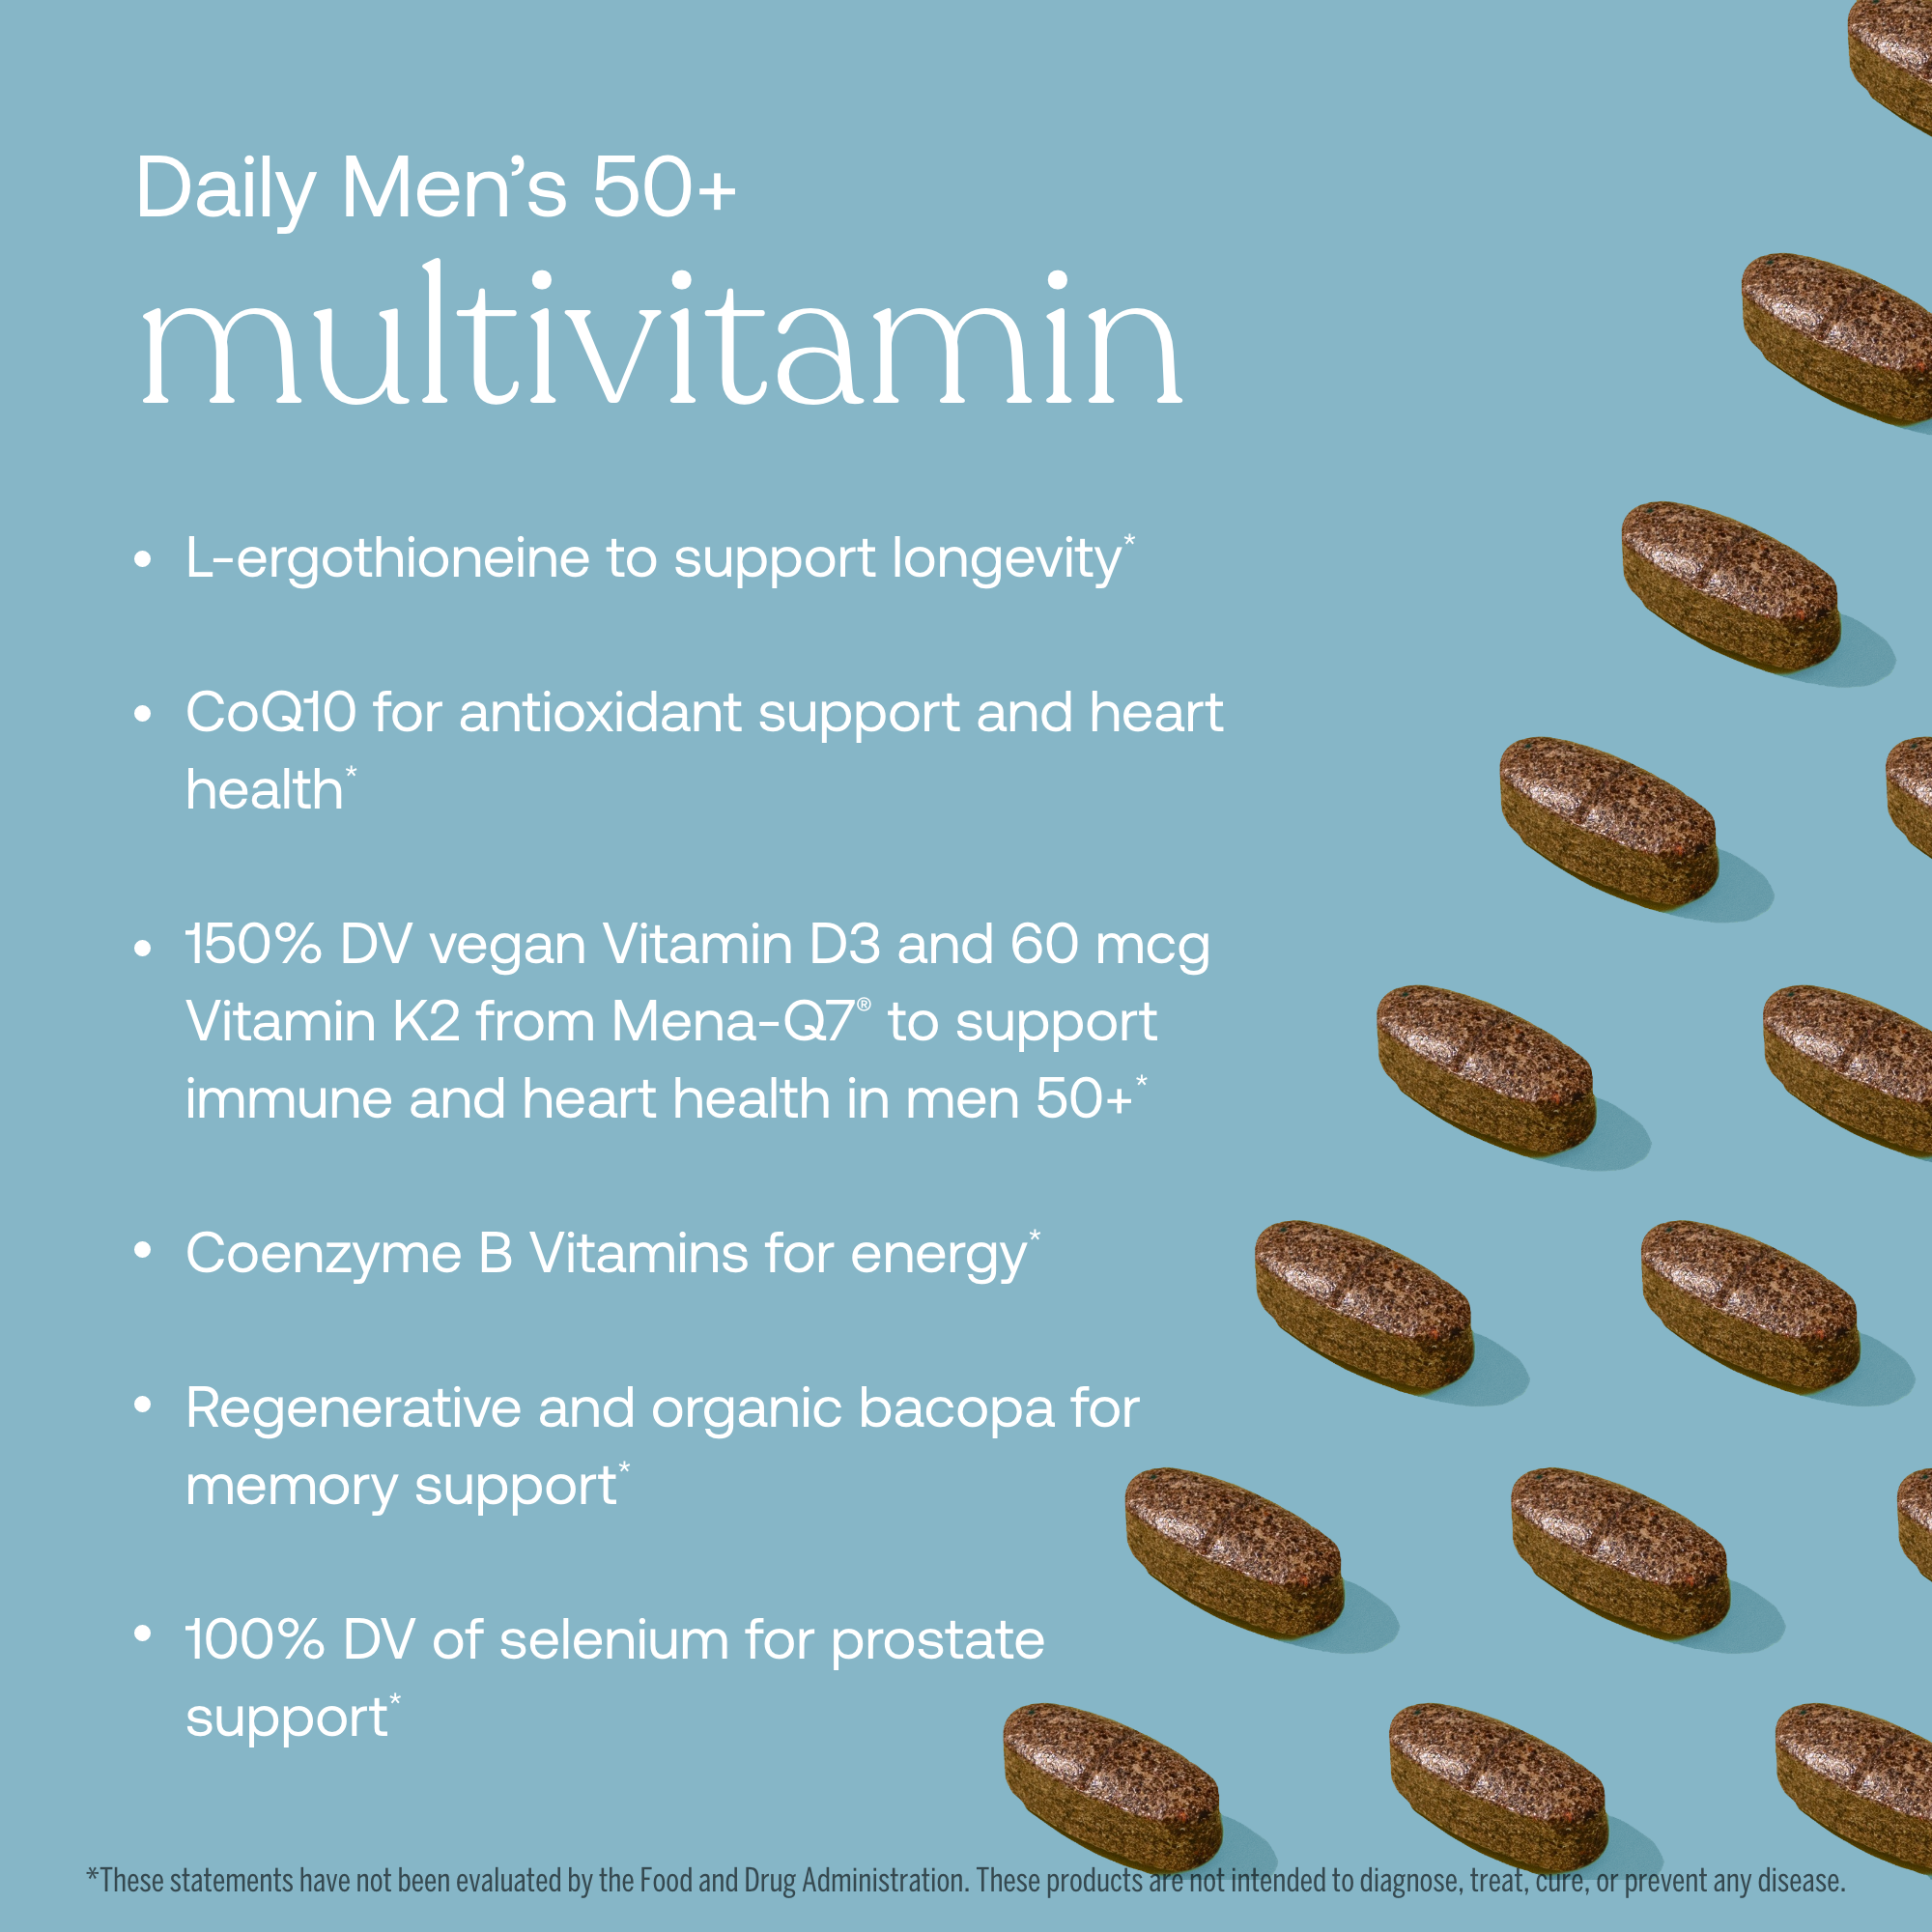 Daily Men's 50+ Multivitamin